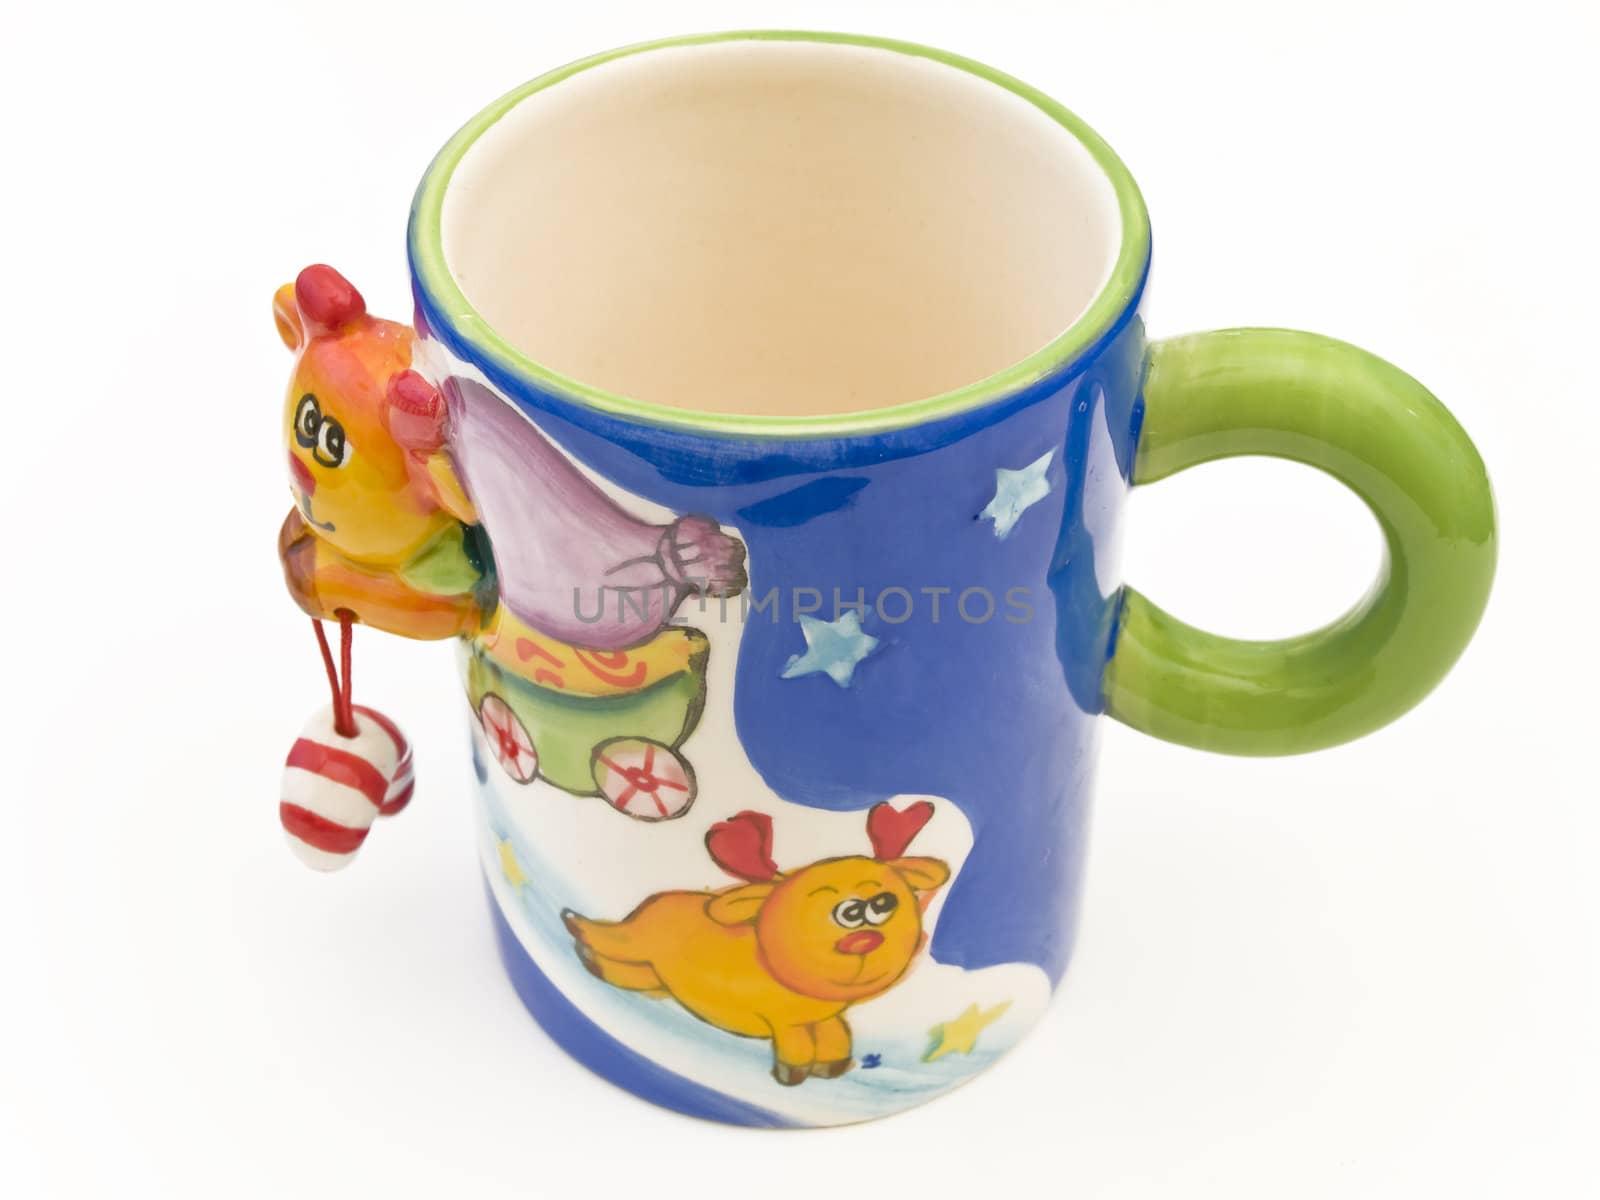 Single multicolored child mug against the white background